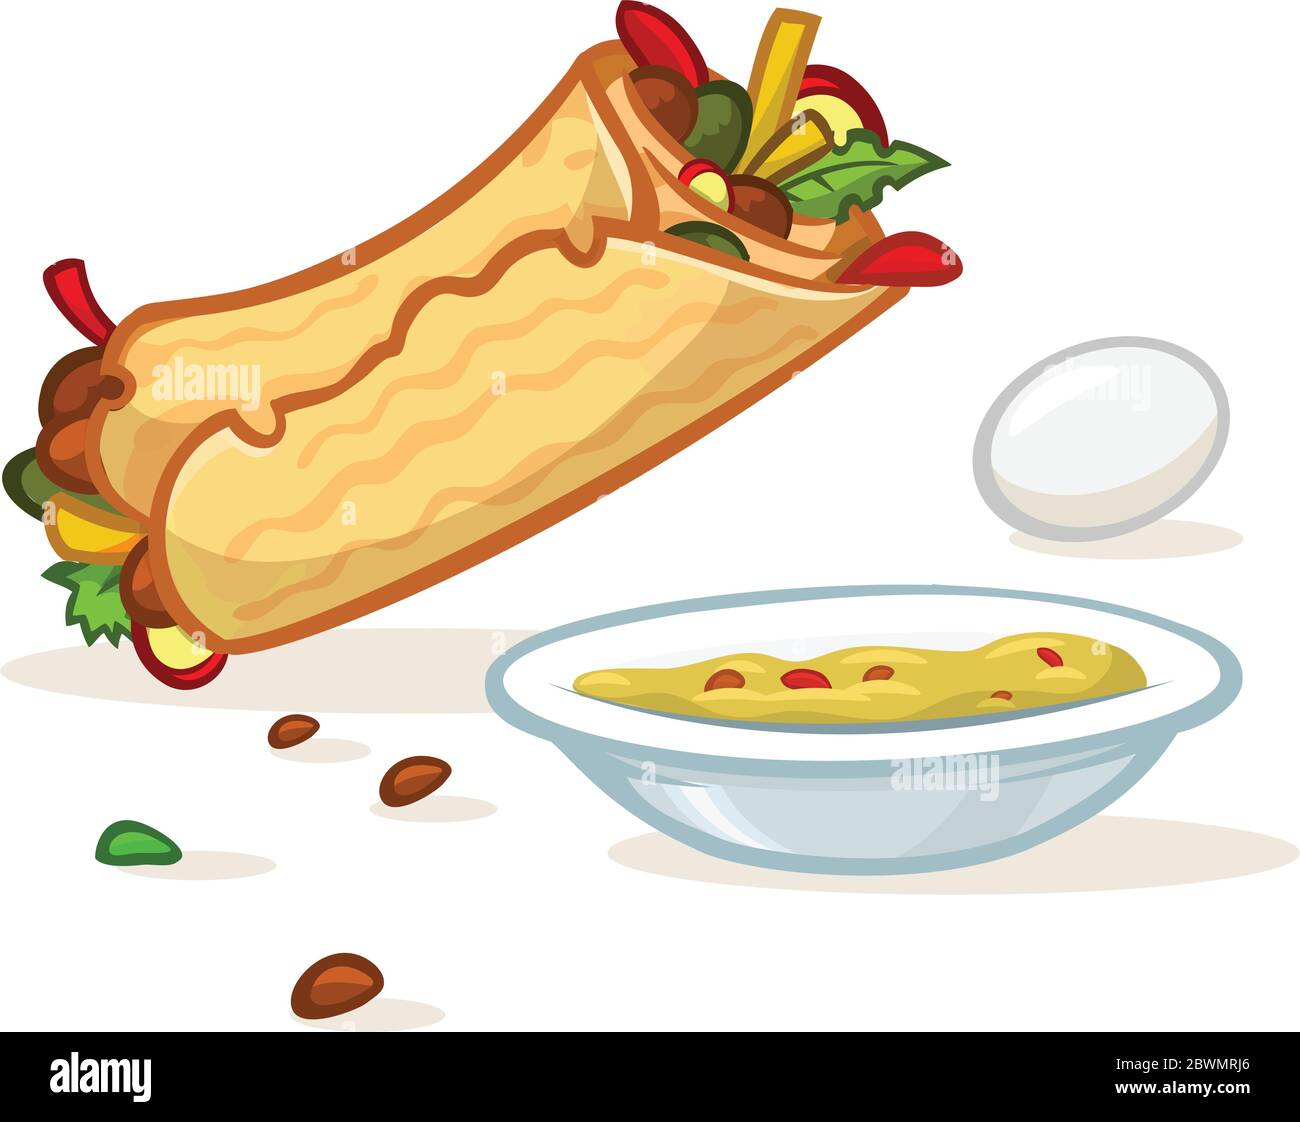 Rotolo di falafel cartoon, piatto con hummus e illustrazione dell'uovo. Icone Street food. Vettore isolato Illustrazione Vettoriale